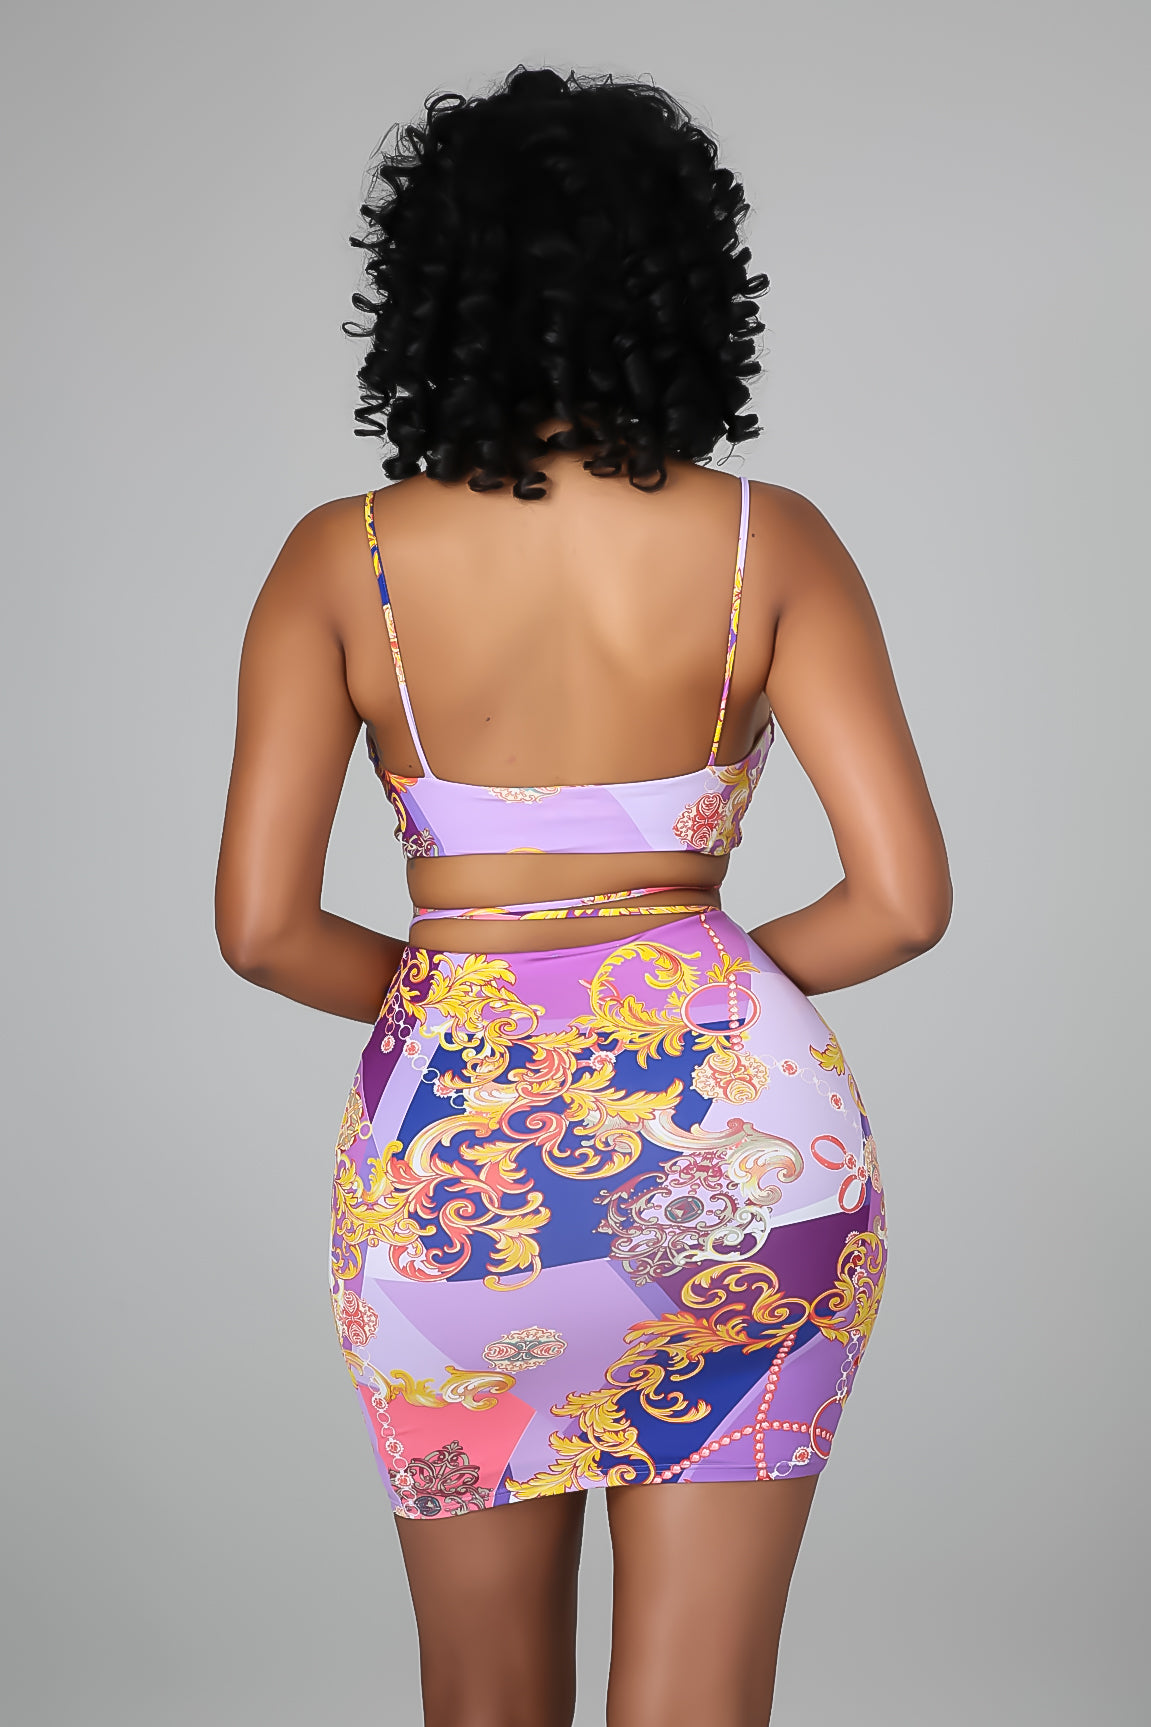 Brazilian Tans Skirt Set